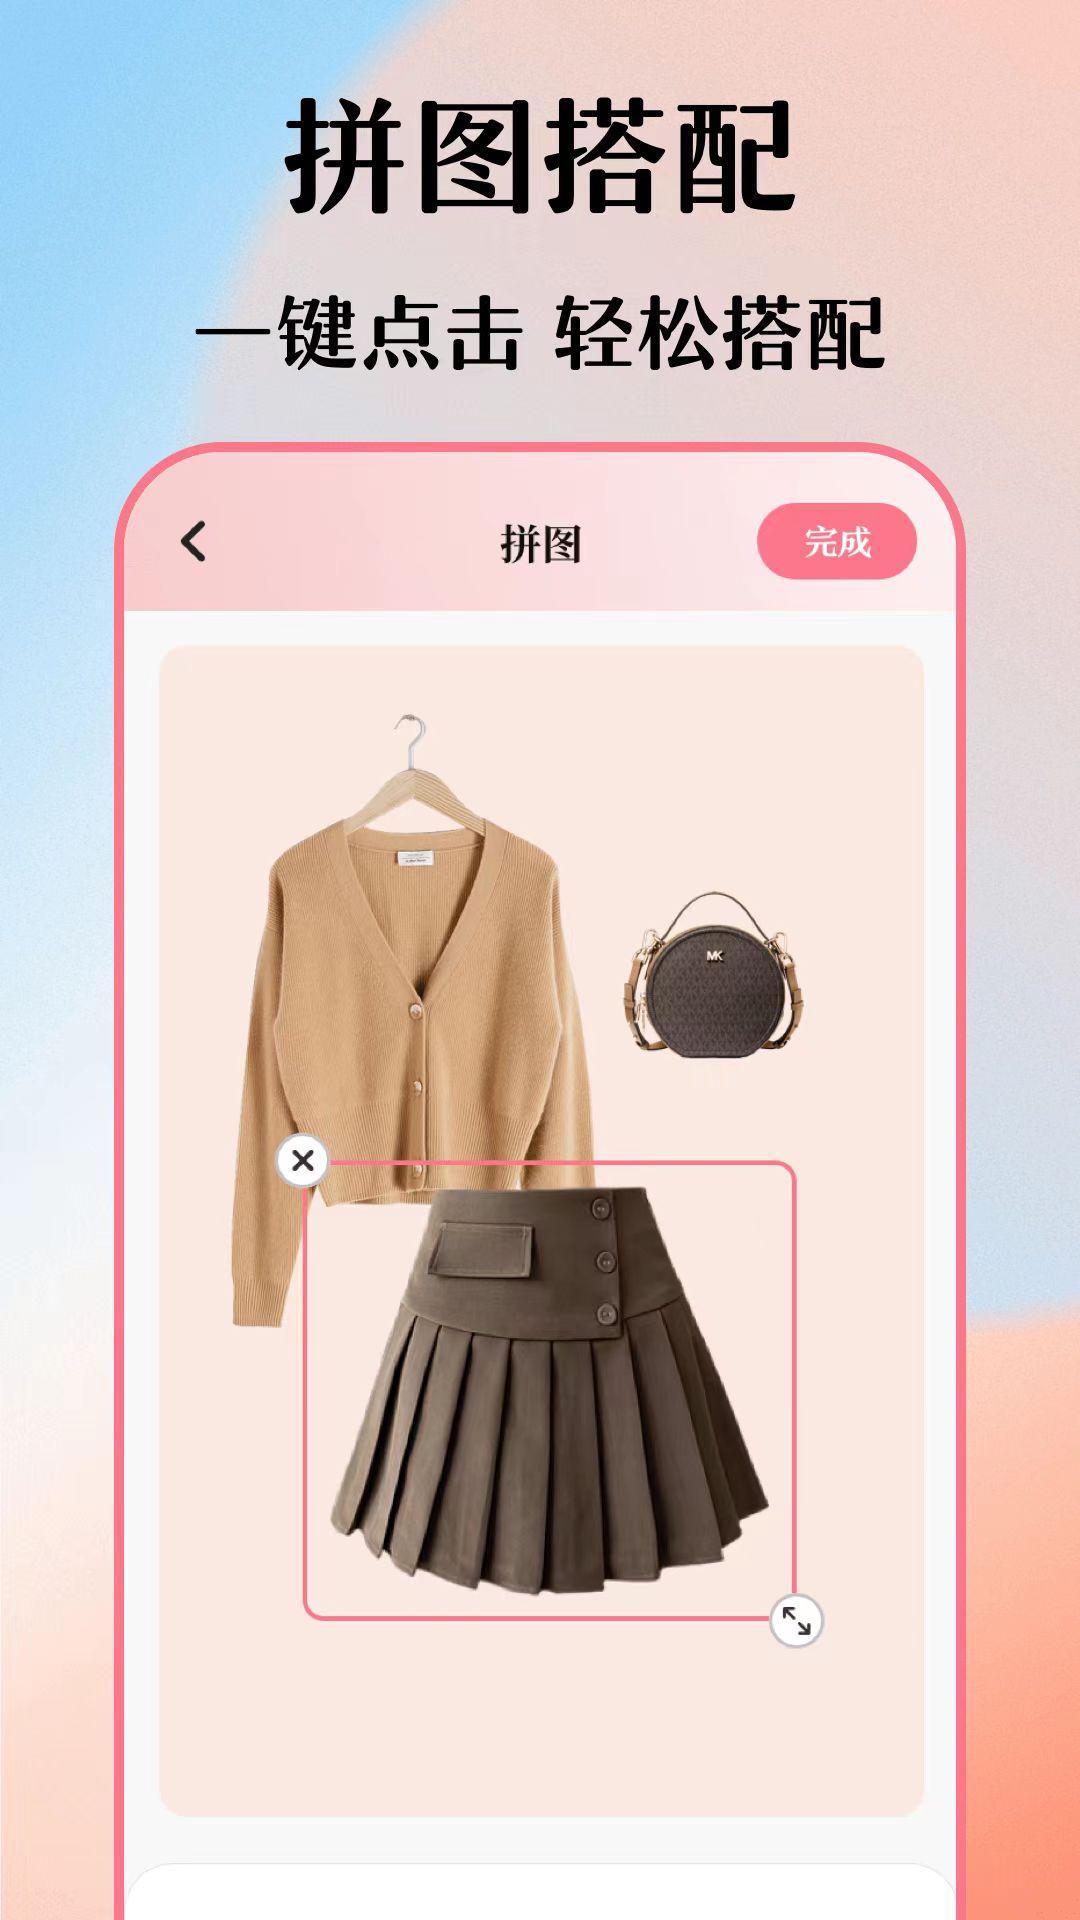 值得推荐的电子衣橱app推荐 整理搭配速度快的电子衣橱软件推荐